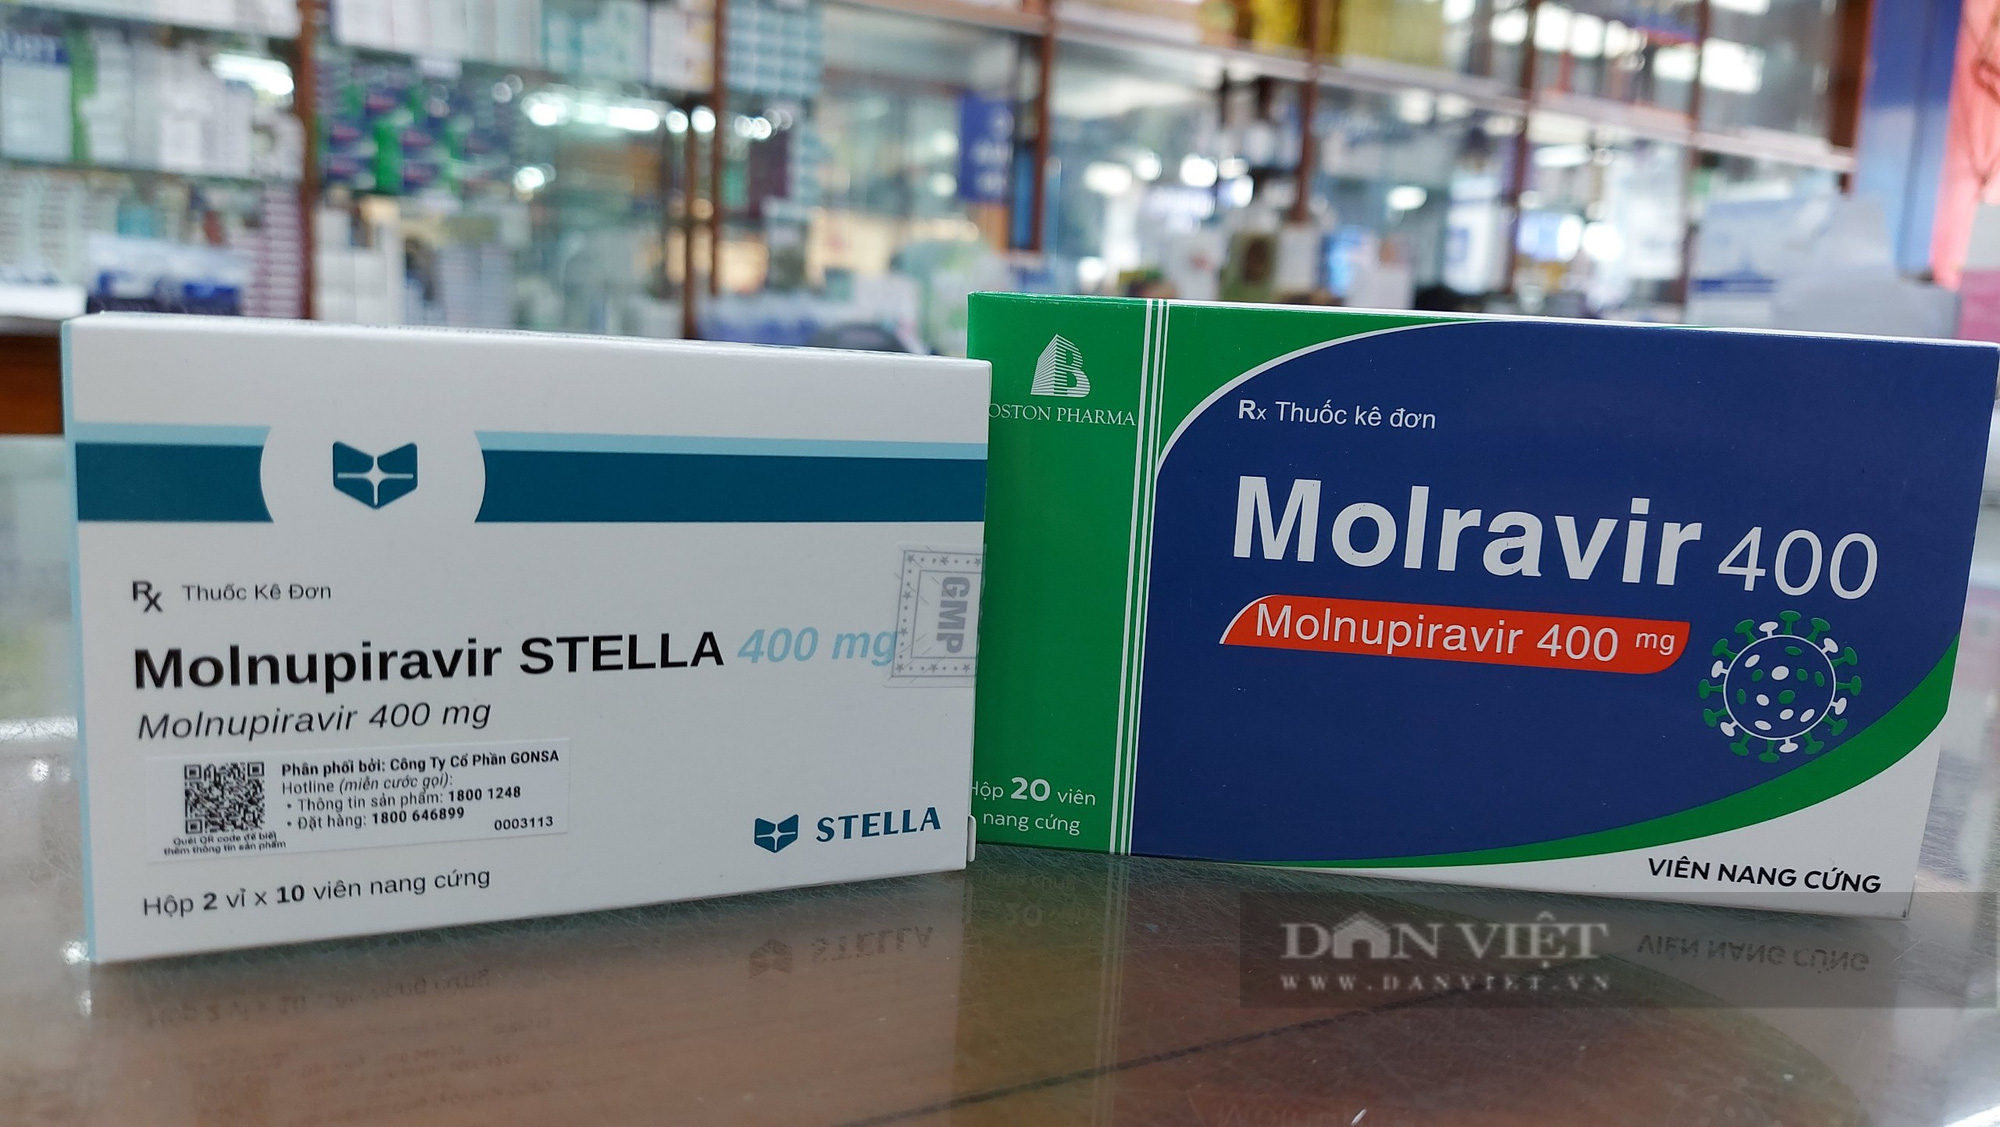 Sở Y tế TP.HCM khuyến cáo: Người dân không nên trữ thuốc Molnupiravir - Ảnh 3.